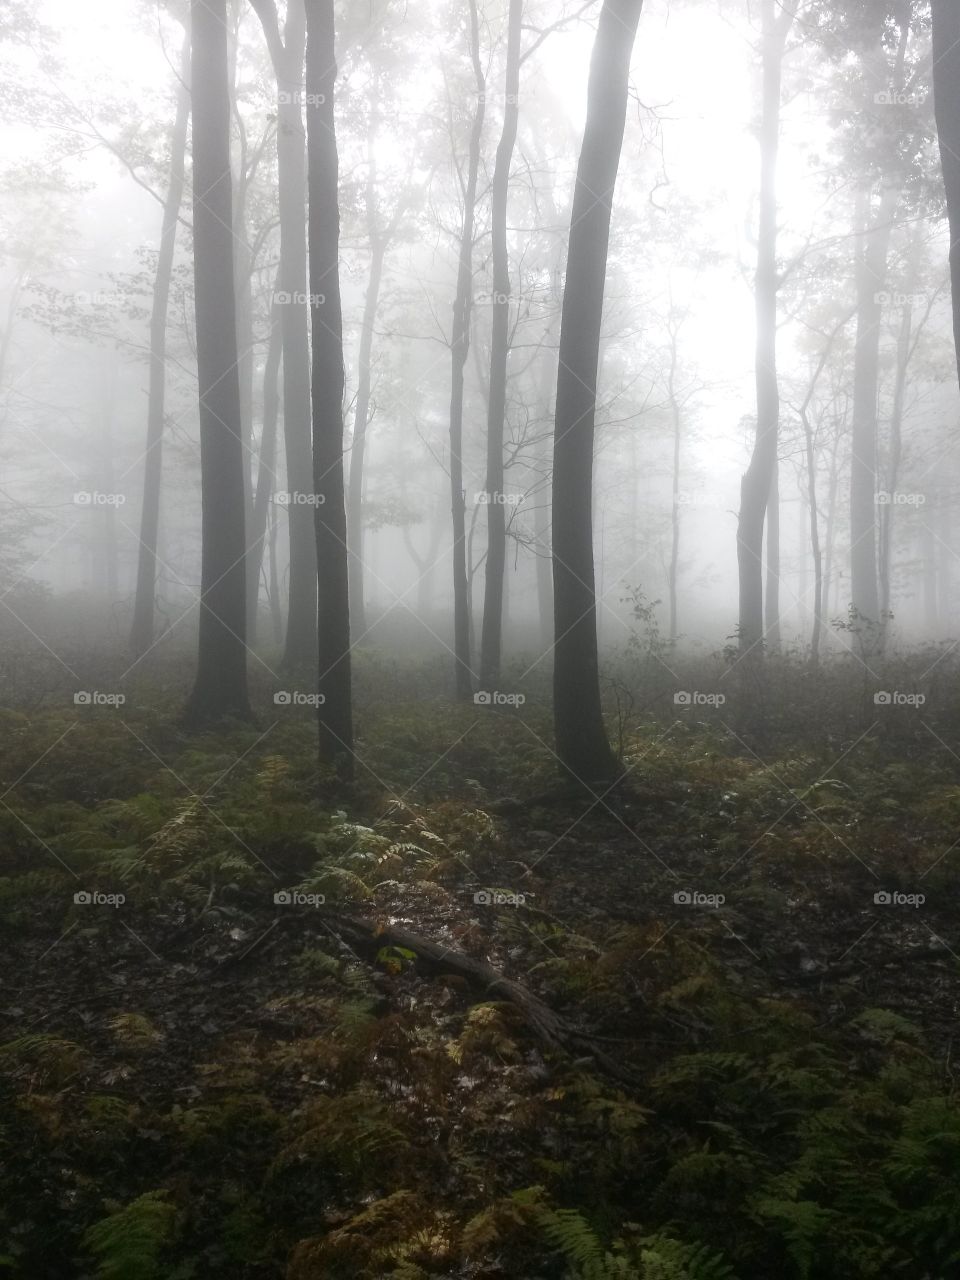 foggy mountain trail